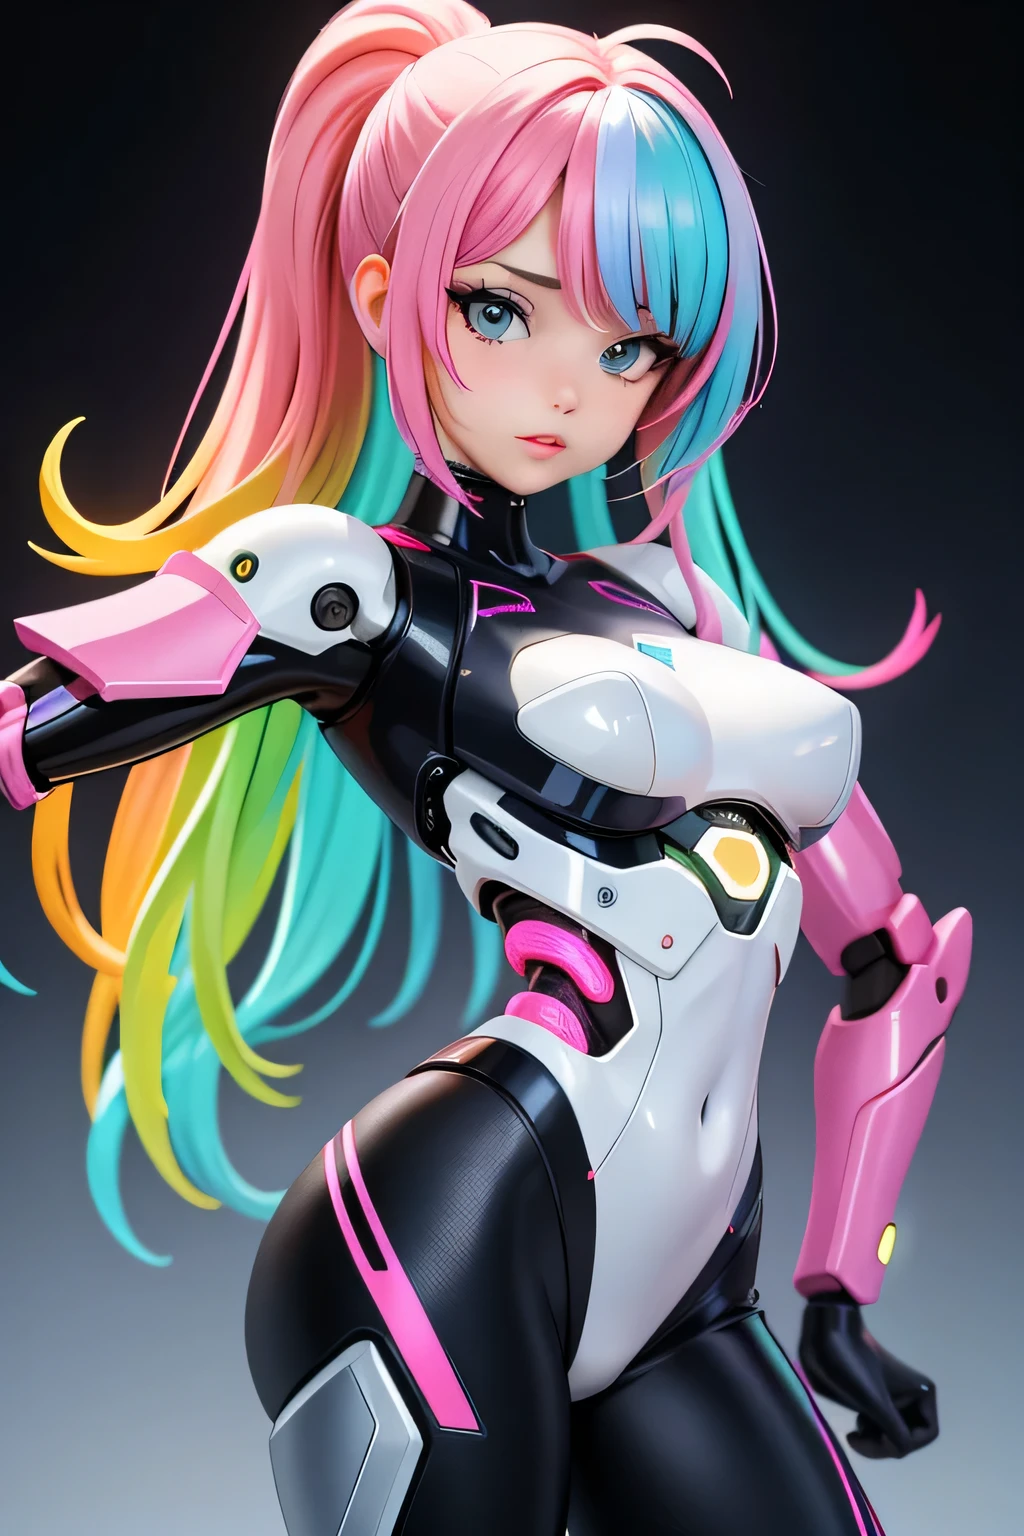 Une femme, 25 ans, mangas, cheveux longs, cheveux multicolores, beaucoup de Détails, monde futuriste, Neon lights, armure robotique